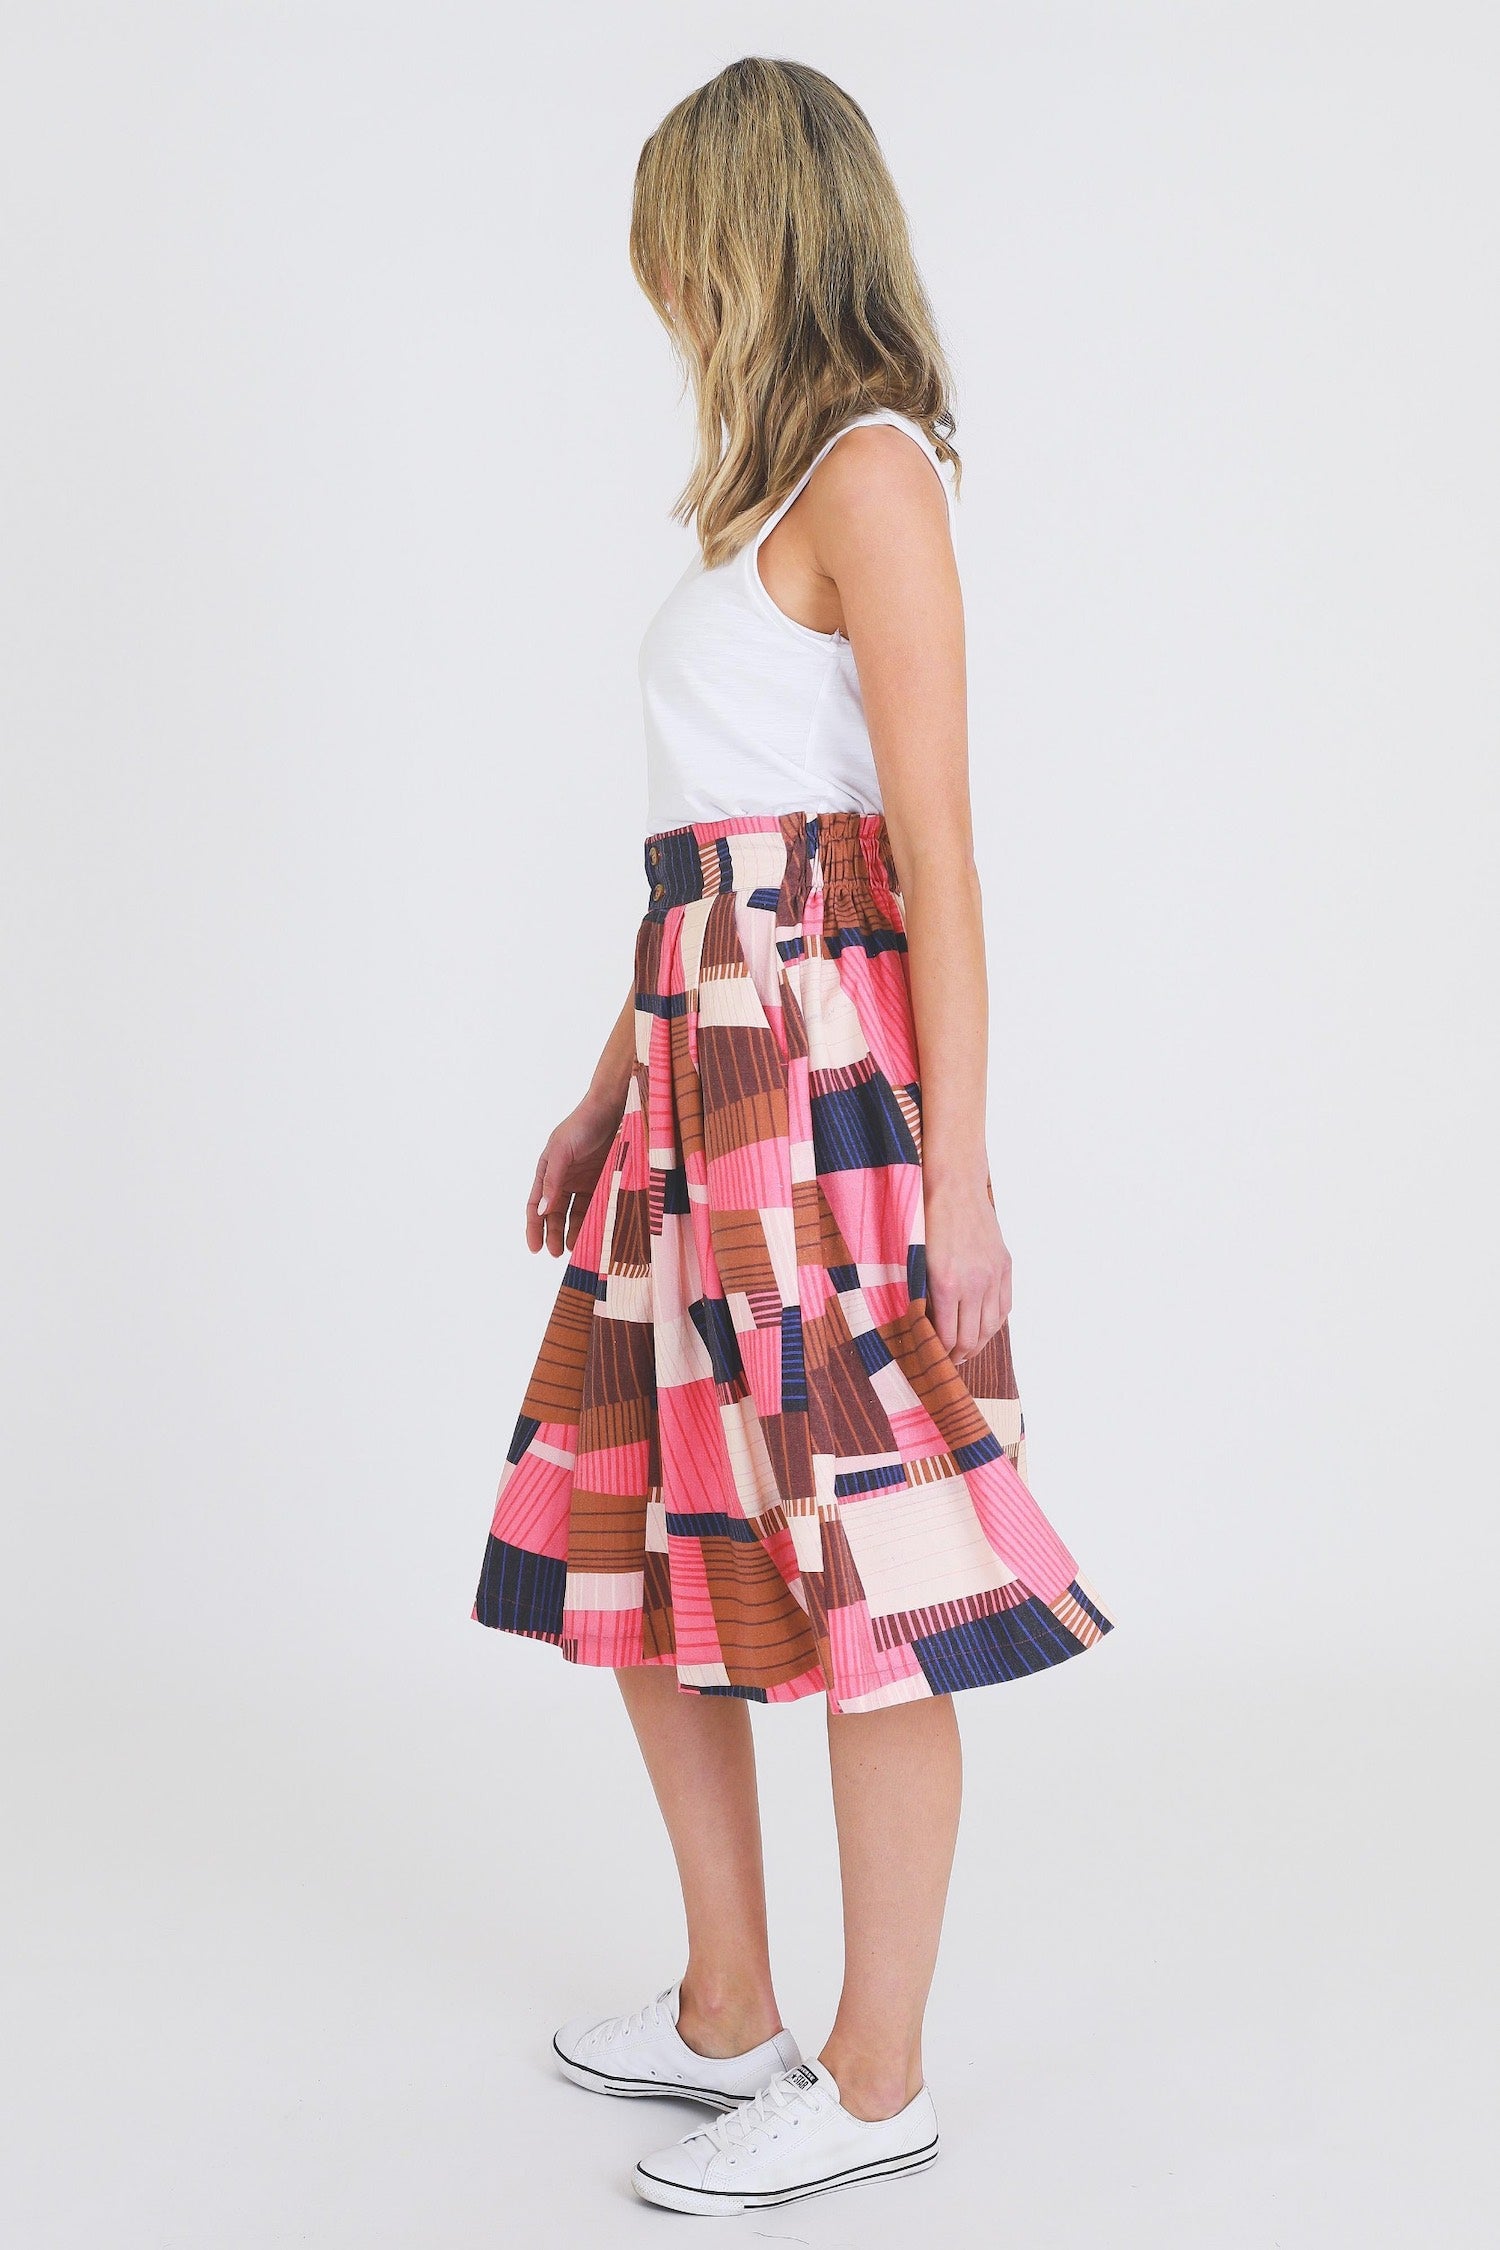 Rosette Geometric Pink Skirt